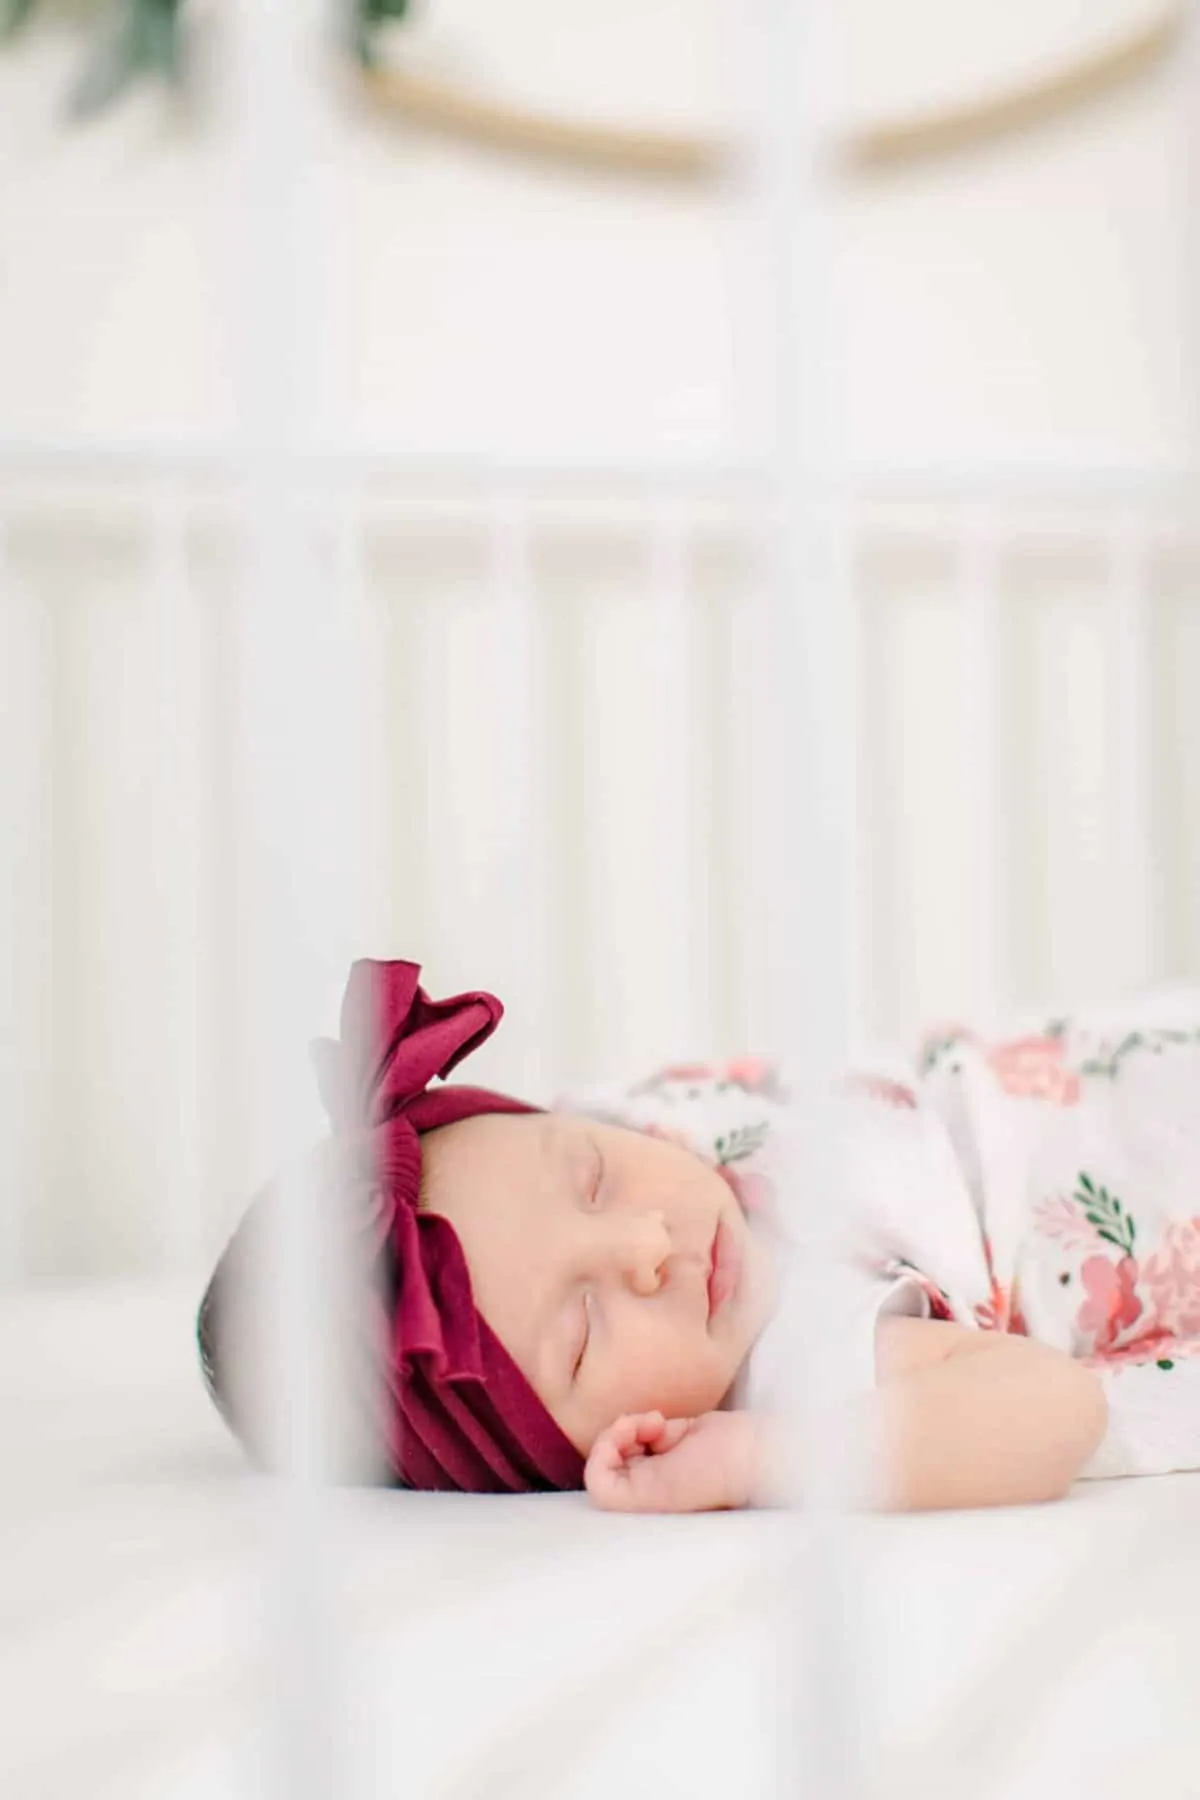 amanda Andrew Charlotte newborn photographers fredericksburg va 139 scaled